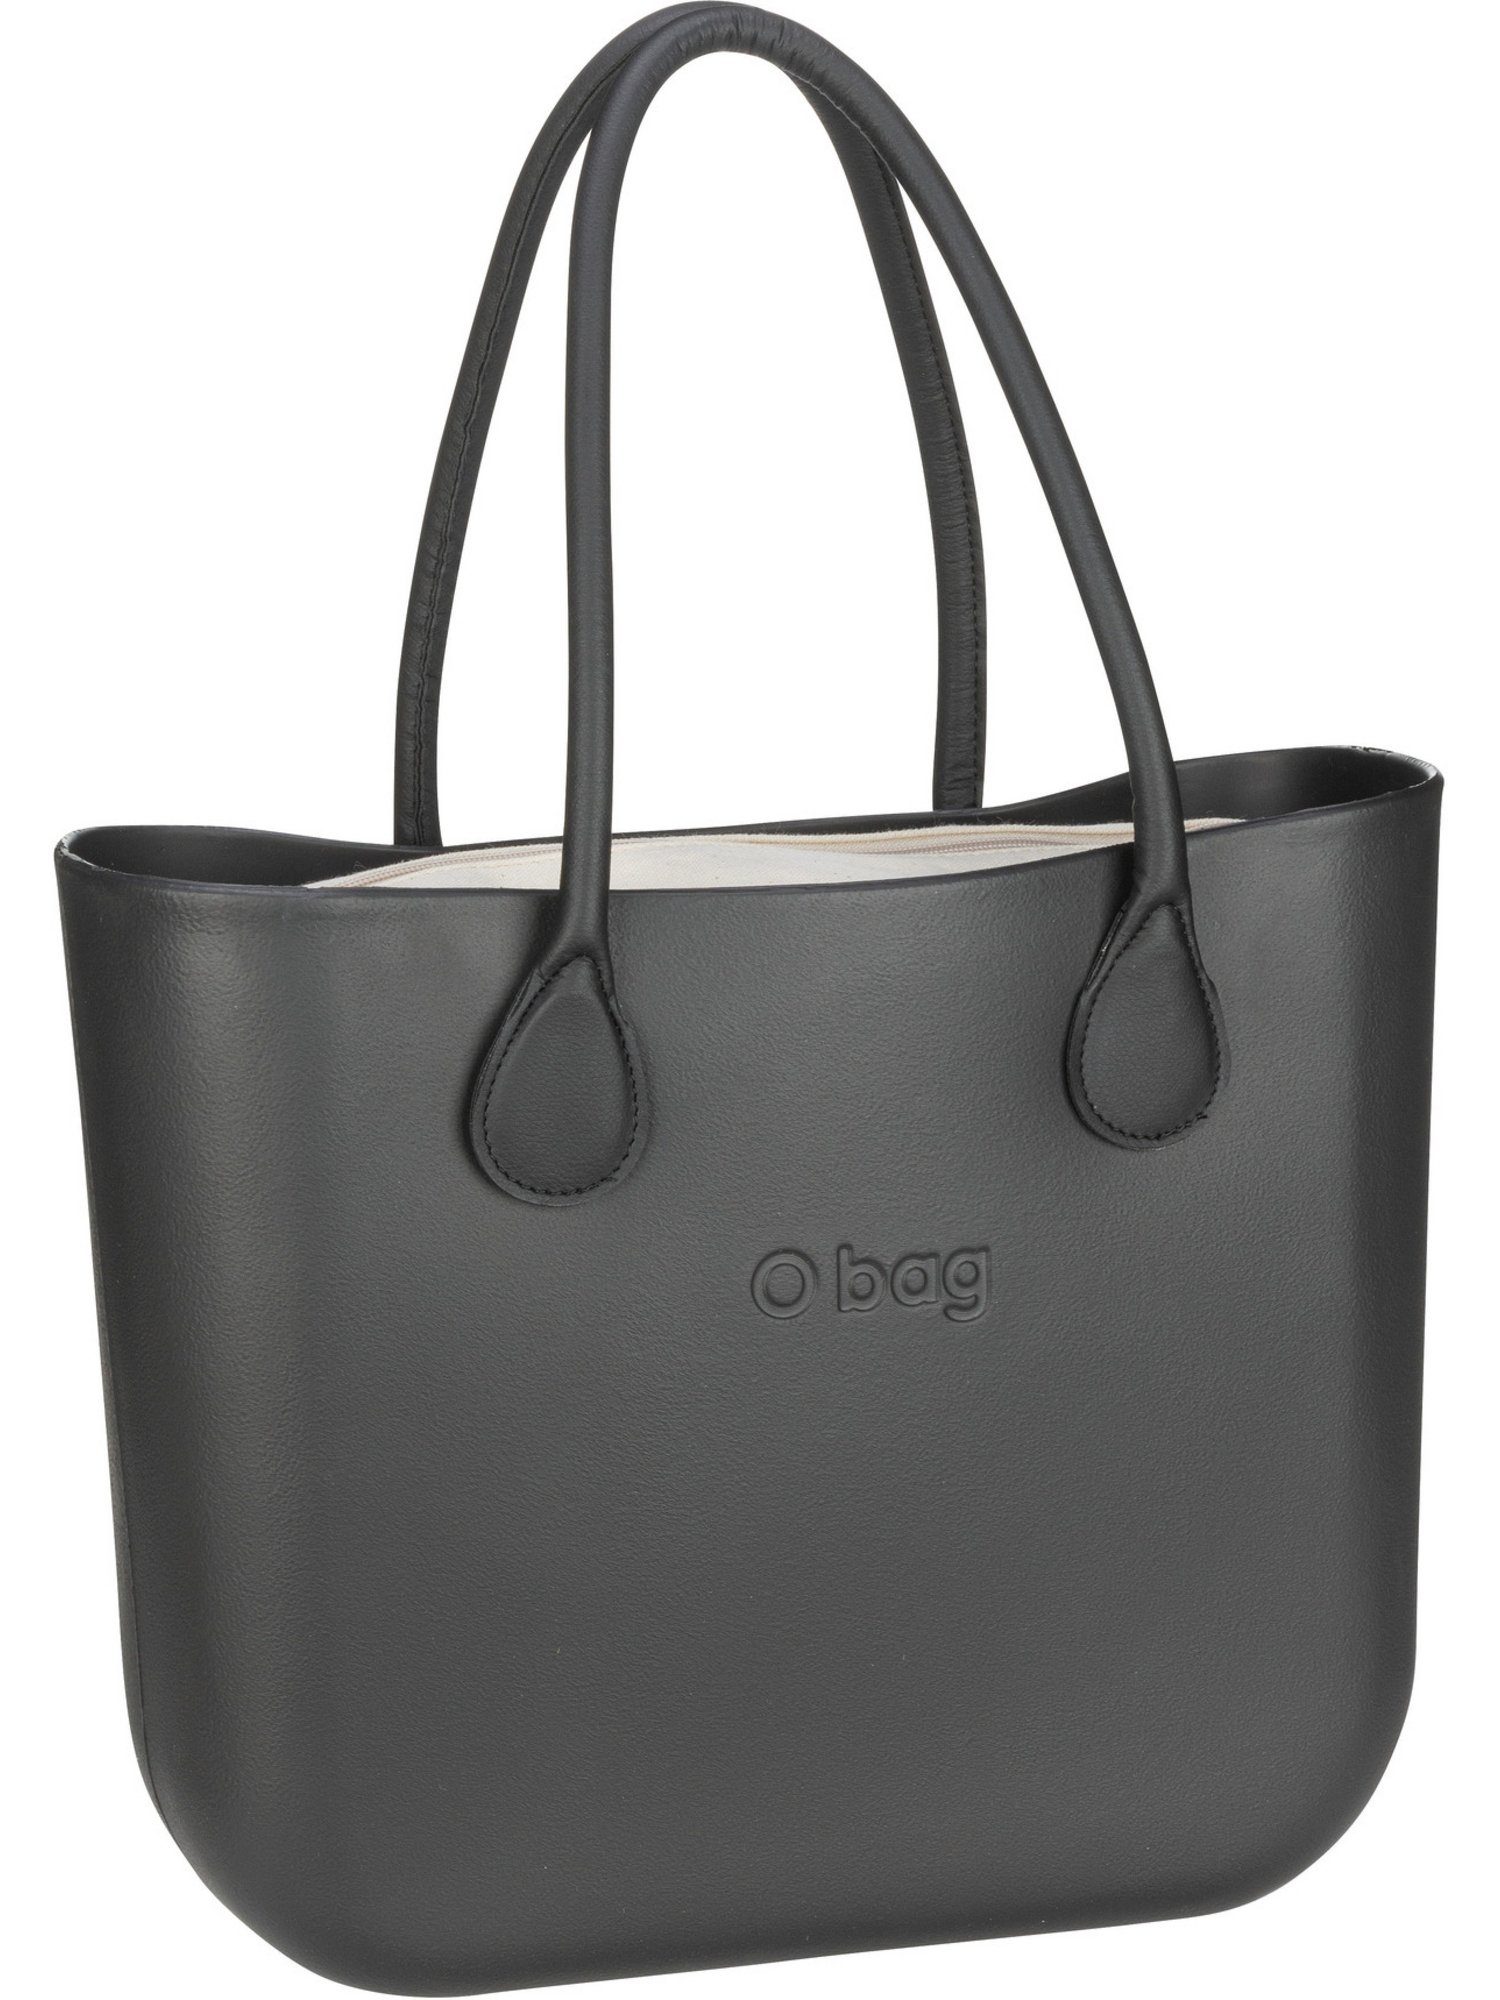 O bag Shopper »O bag 509« online kaufen | OTTO